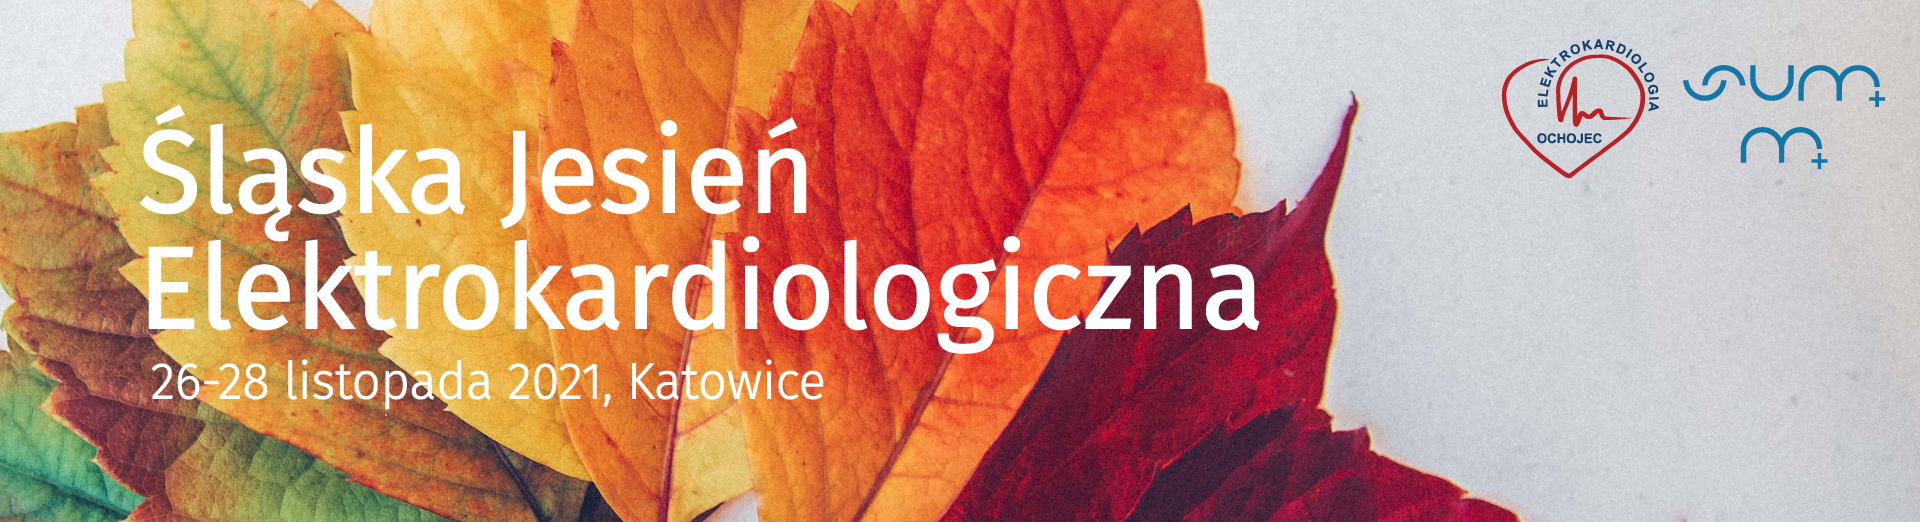 Śląska Jesień Elektrokardiologiczna 2021